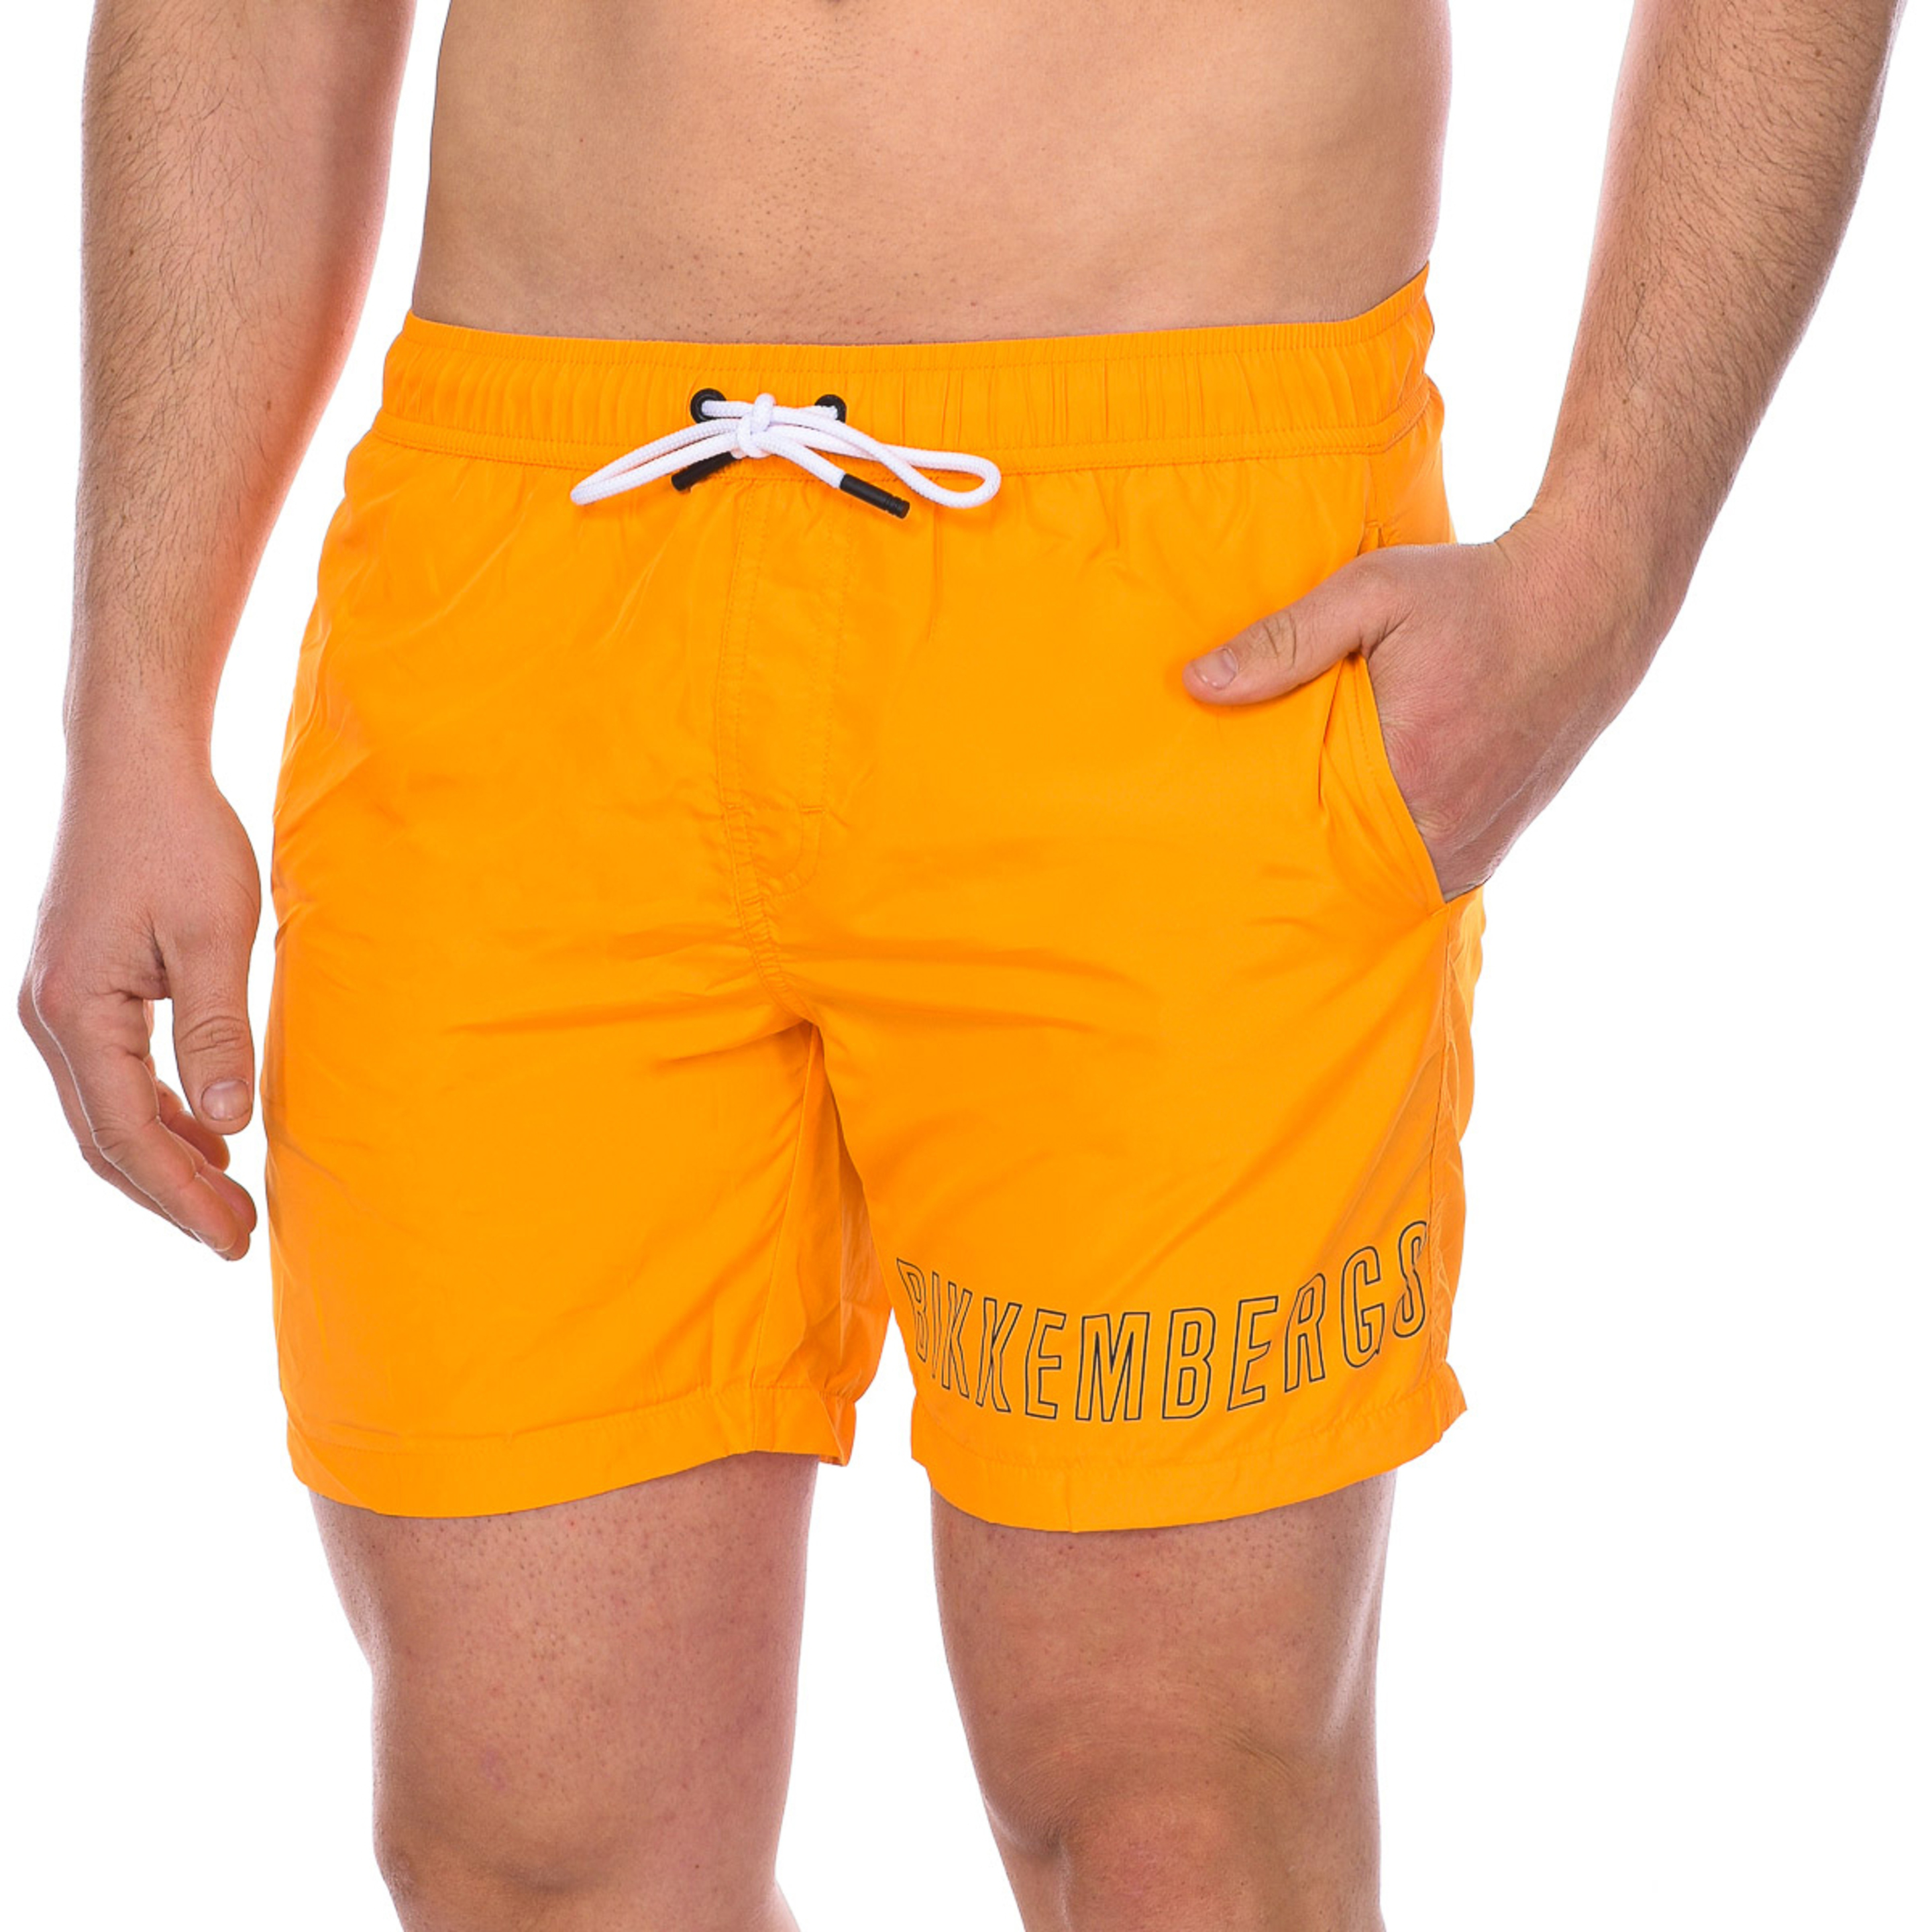 Bañador Medium Boardshort Basic Bkk1mbm01 - naranja - 